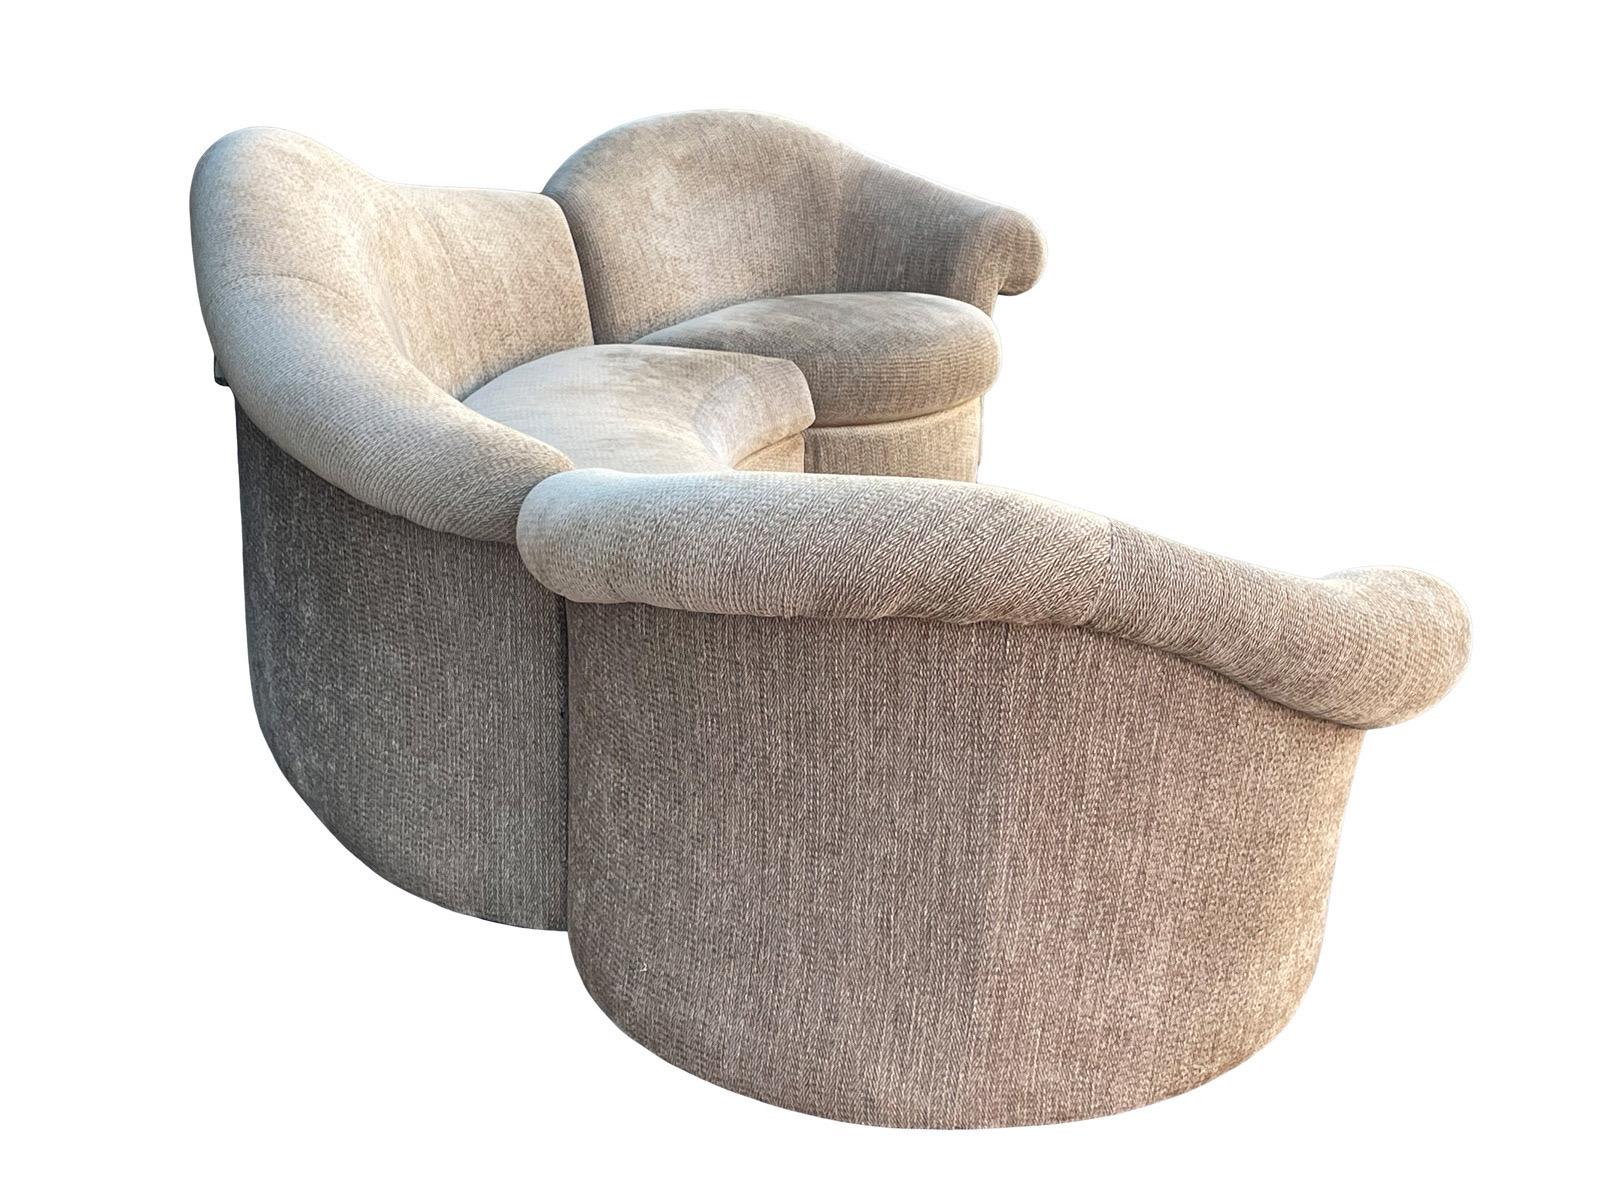 Post-Modern 1990s Sculptural Sectional Designer Sofa For Sale